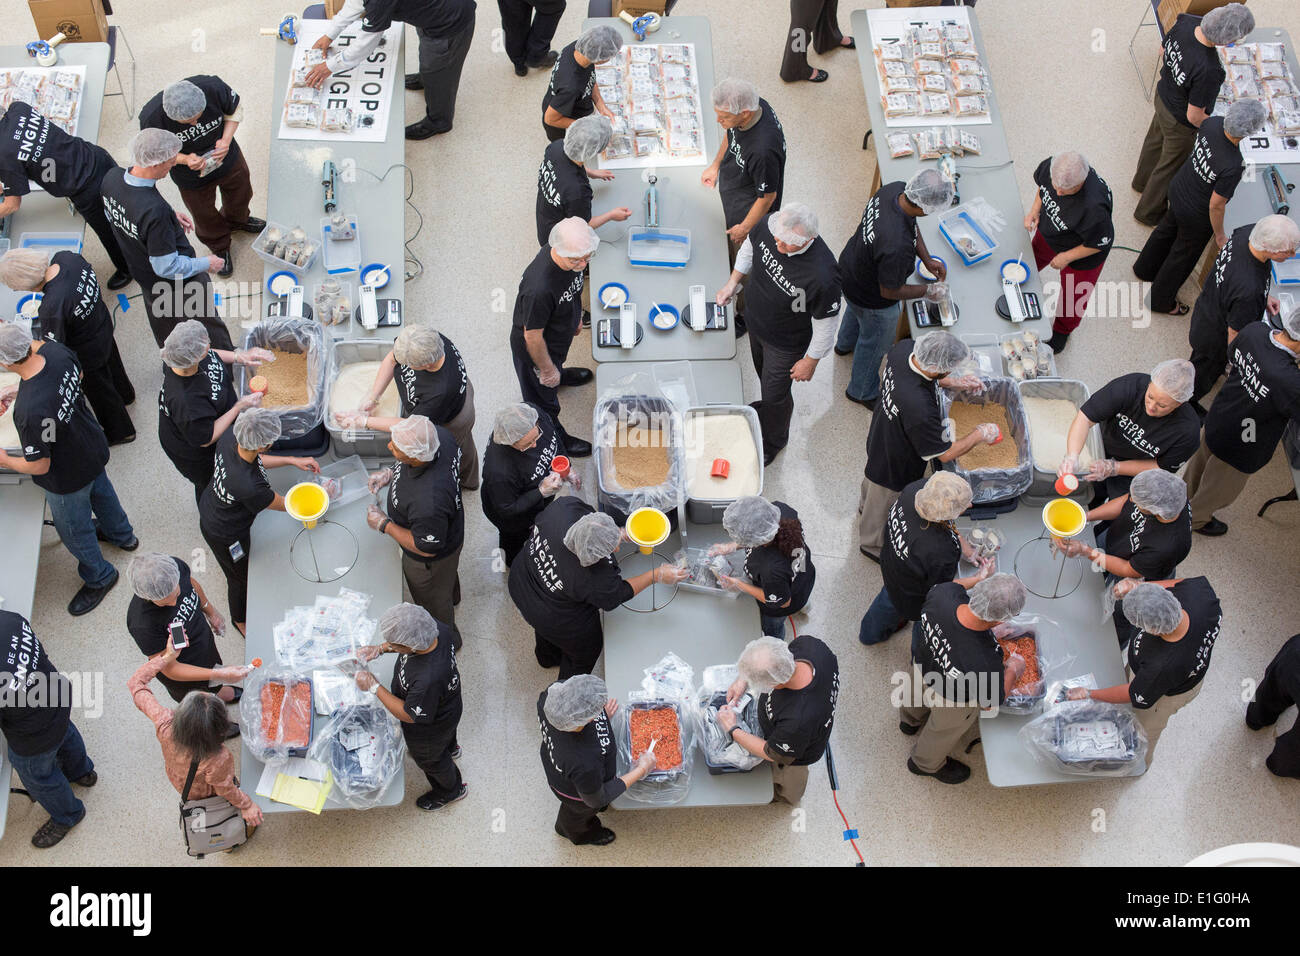 Auburn Hills, Michigan, USA. Chrysler Mitarbeiter freiwillige bereiten Mahlzeit Pakete für Hunger jetzt beenden, eine internationale Hunger Hilfswerk. Das Essen wird nach Brasilien gesendet, Schulprogramme Fütterung zu unterstützen. Bildnachweis: Jim West/Alamy Live-Nachrichten Stockfoto